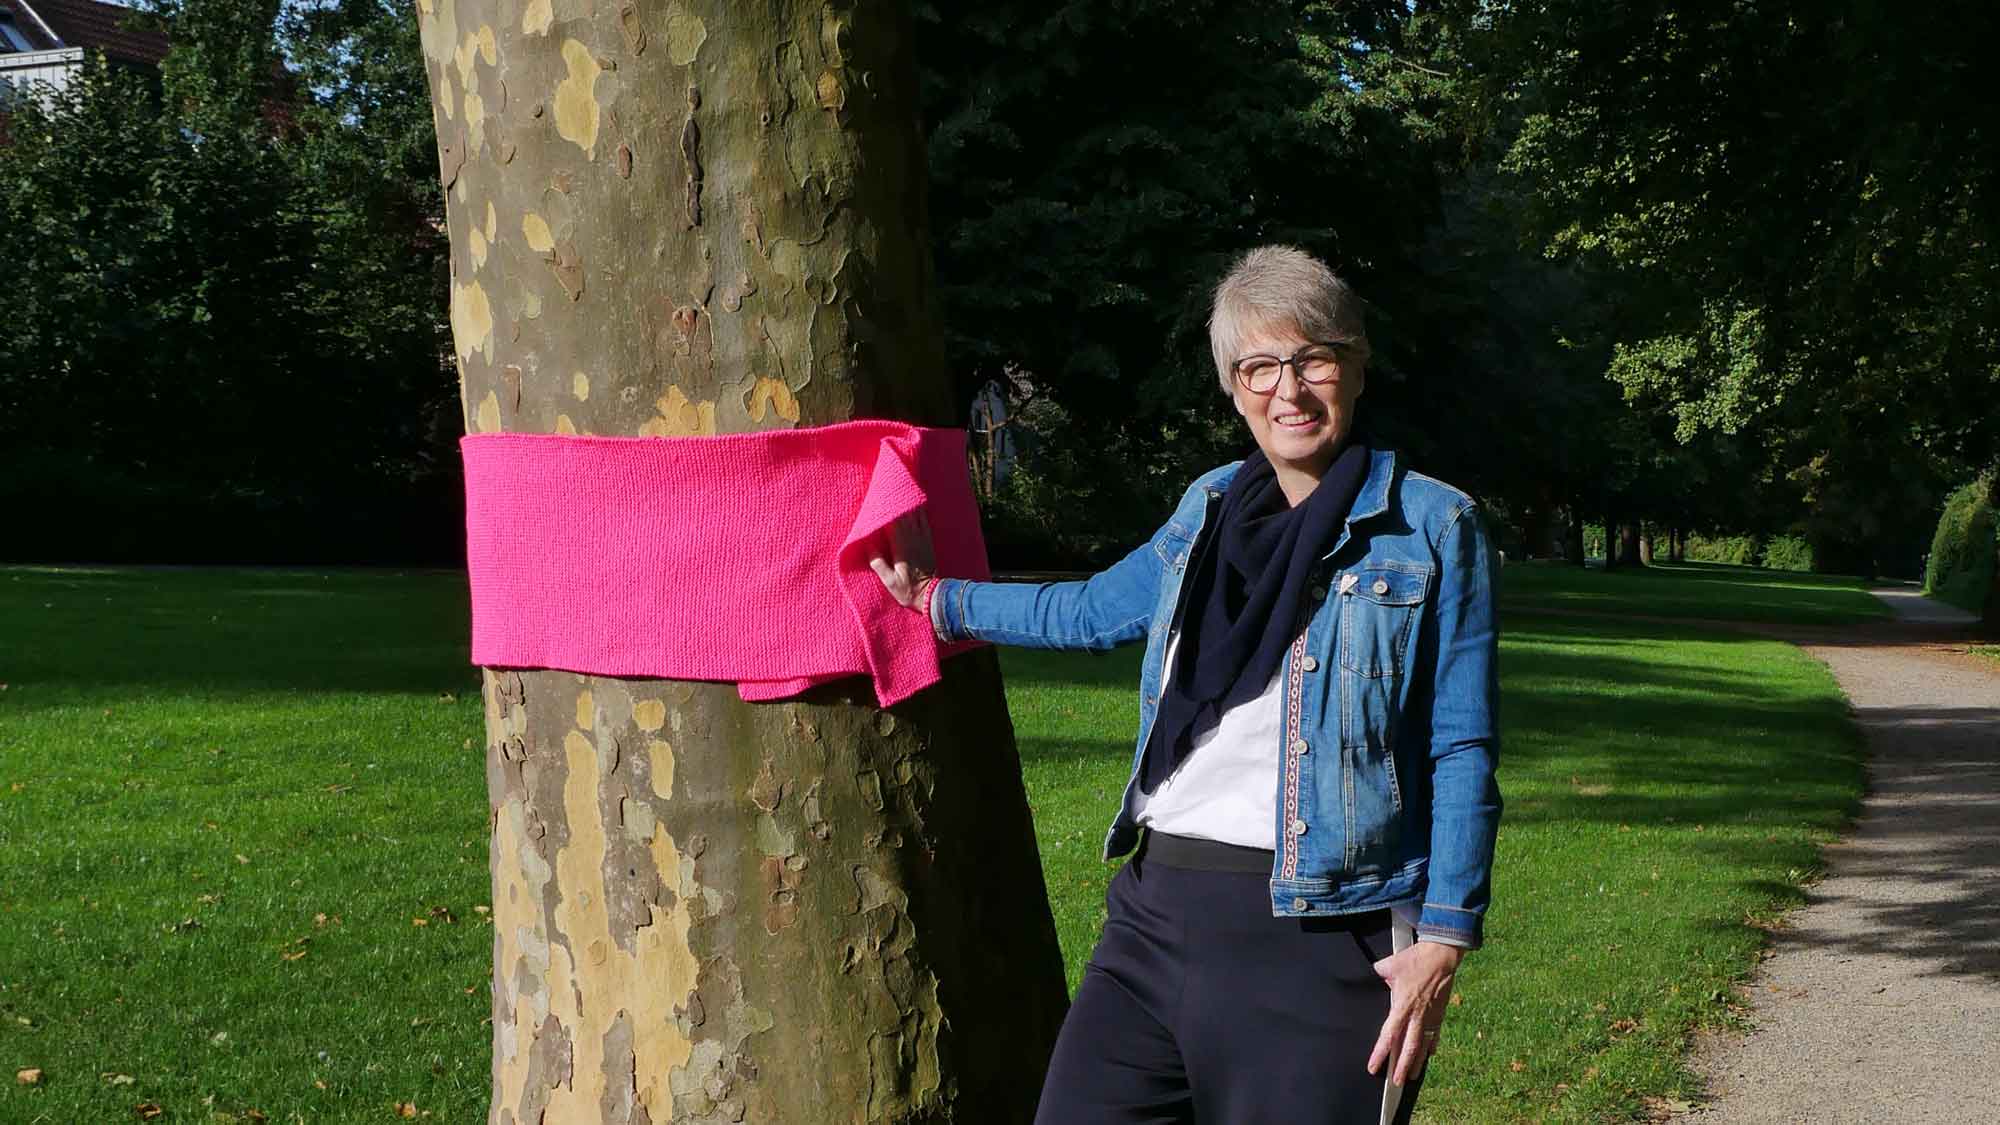 Lemgo: Pinke Schals machen auf Brustkrebs aufmerksam, Aktion rund um den Lemgoer Wall